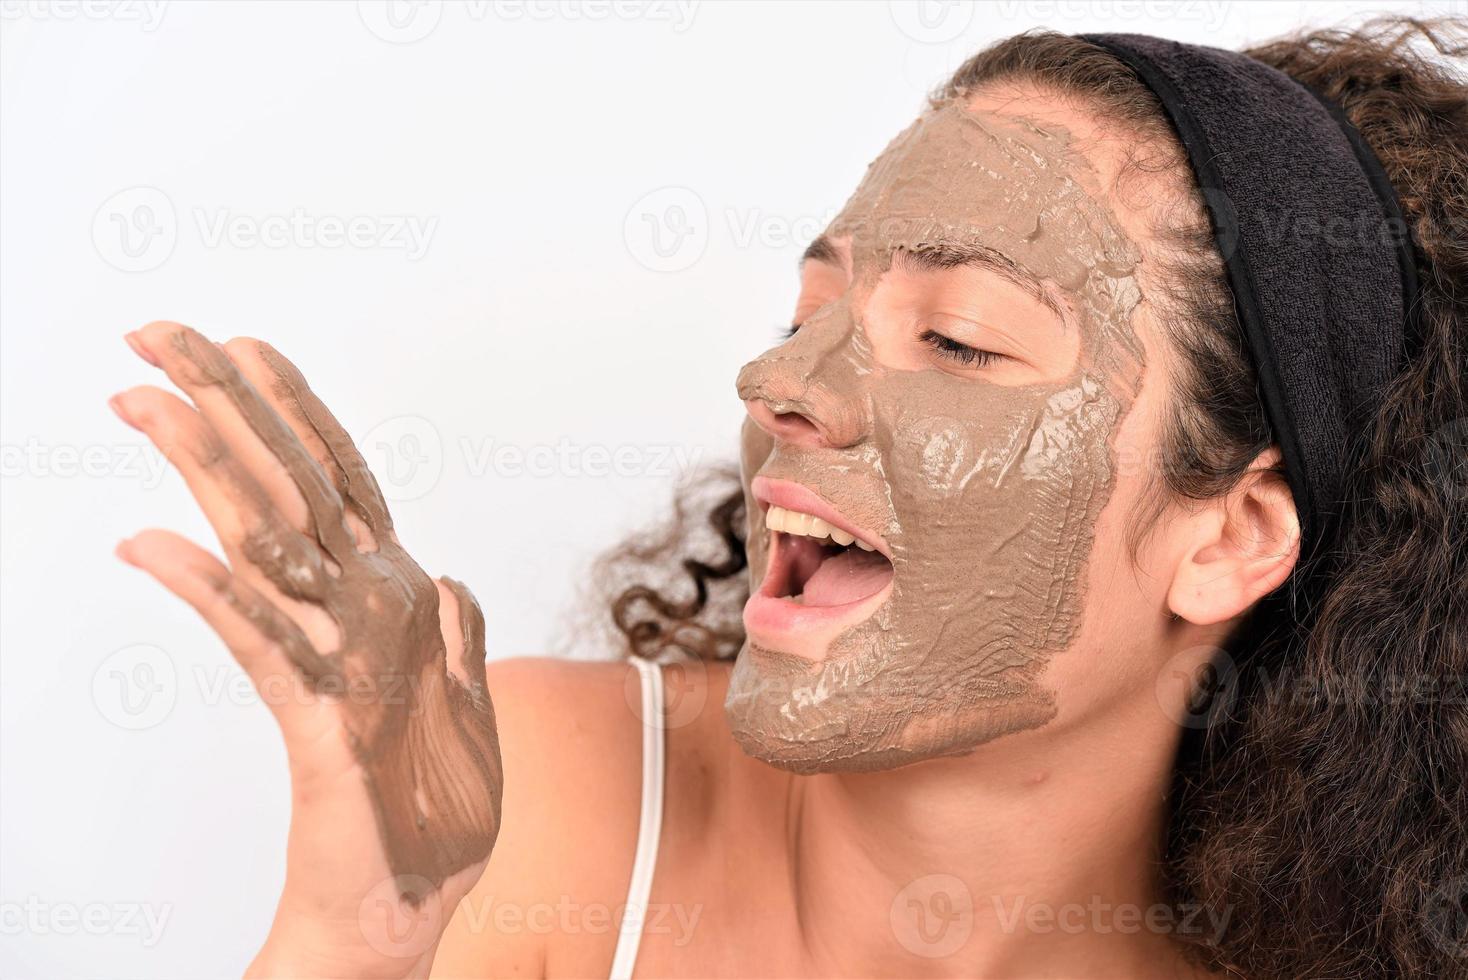 procédures de beauté concept de soins de la peau. jeune femme appliquant un masque facial d'argile de boue grise sur son visage photo